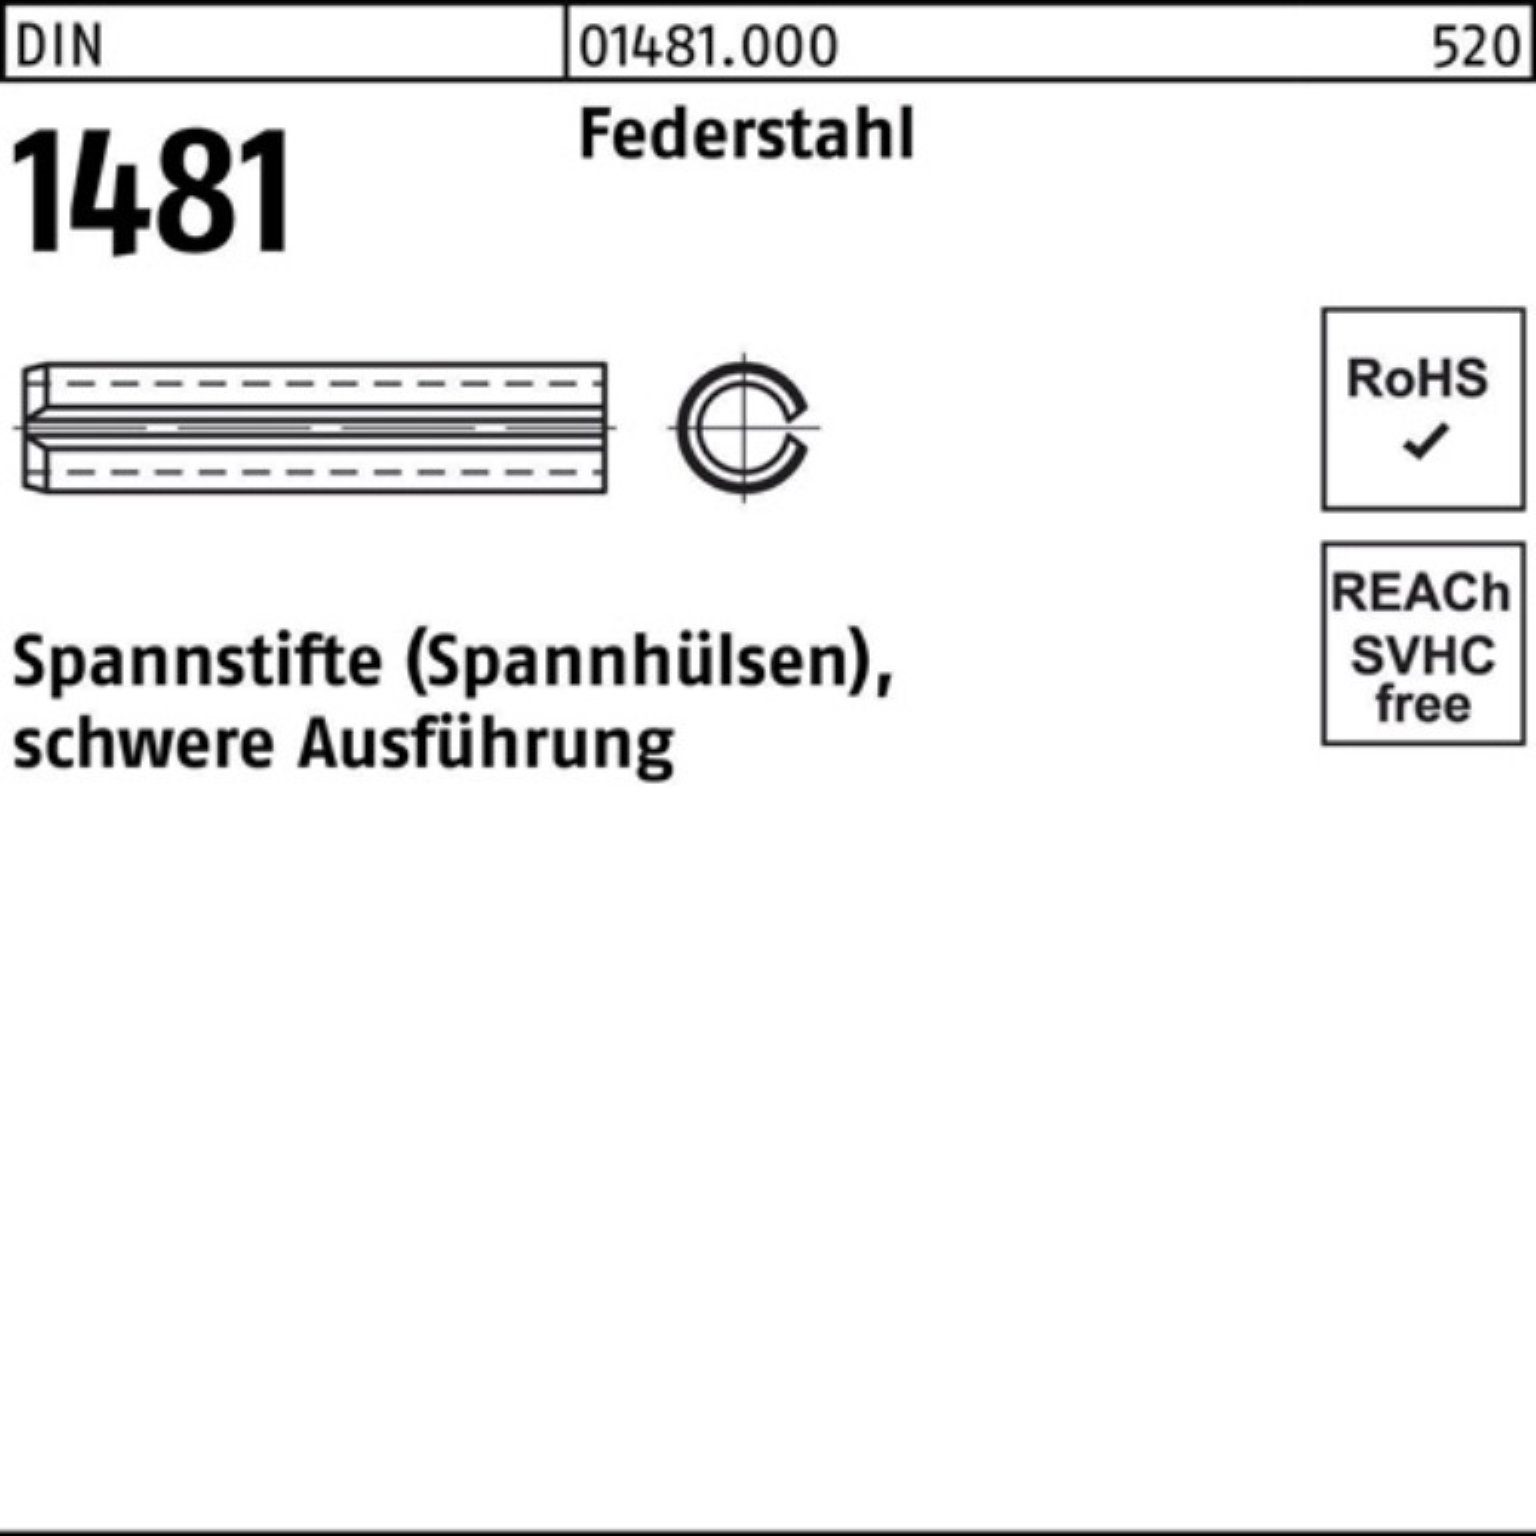 Reyher Spannstift 100er Pack Spannstift DIN 1481 10x 24 Federstahl schwere Ausführung 1